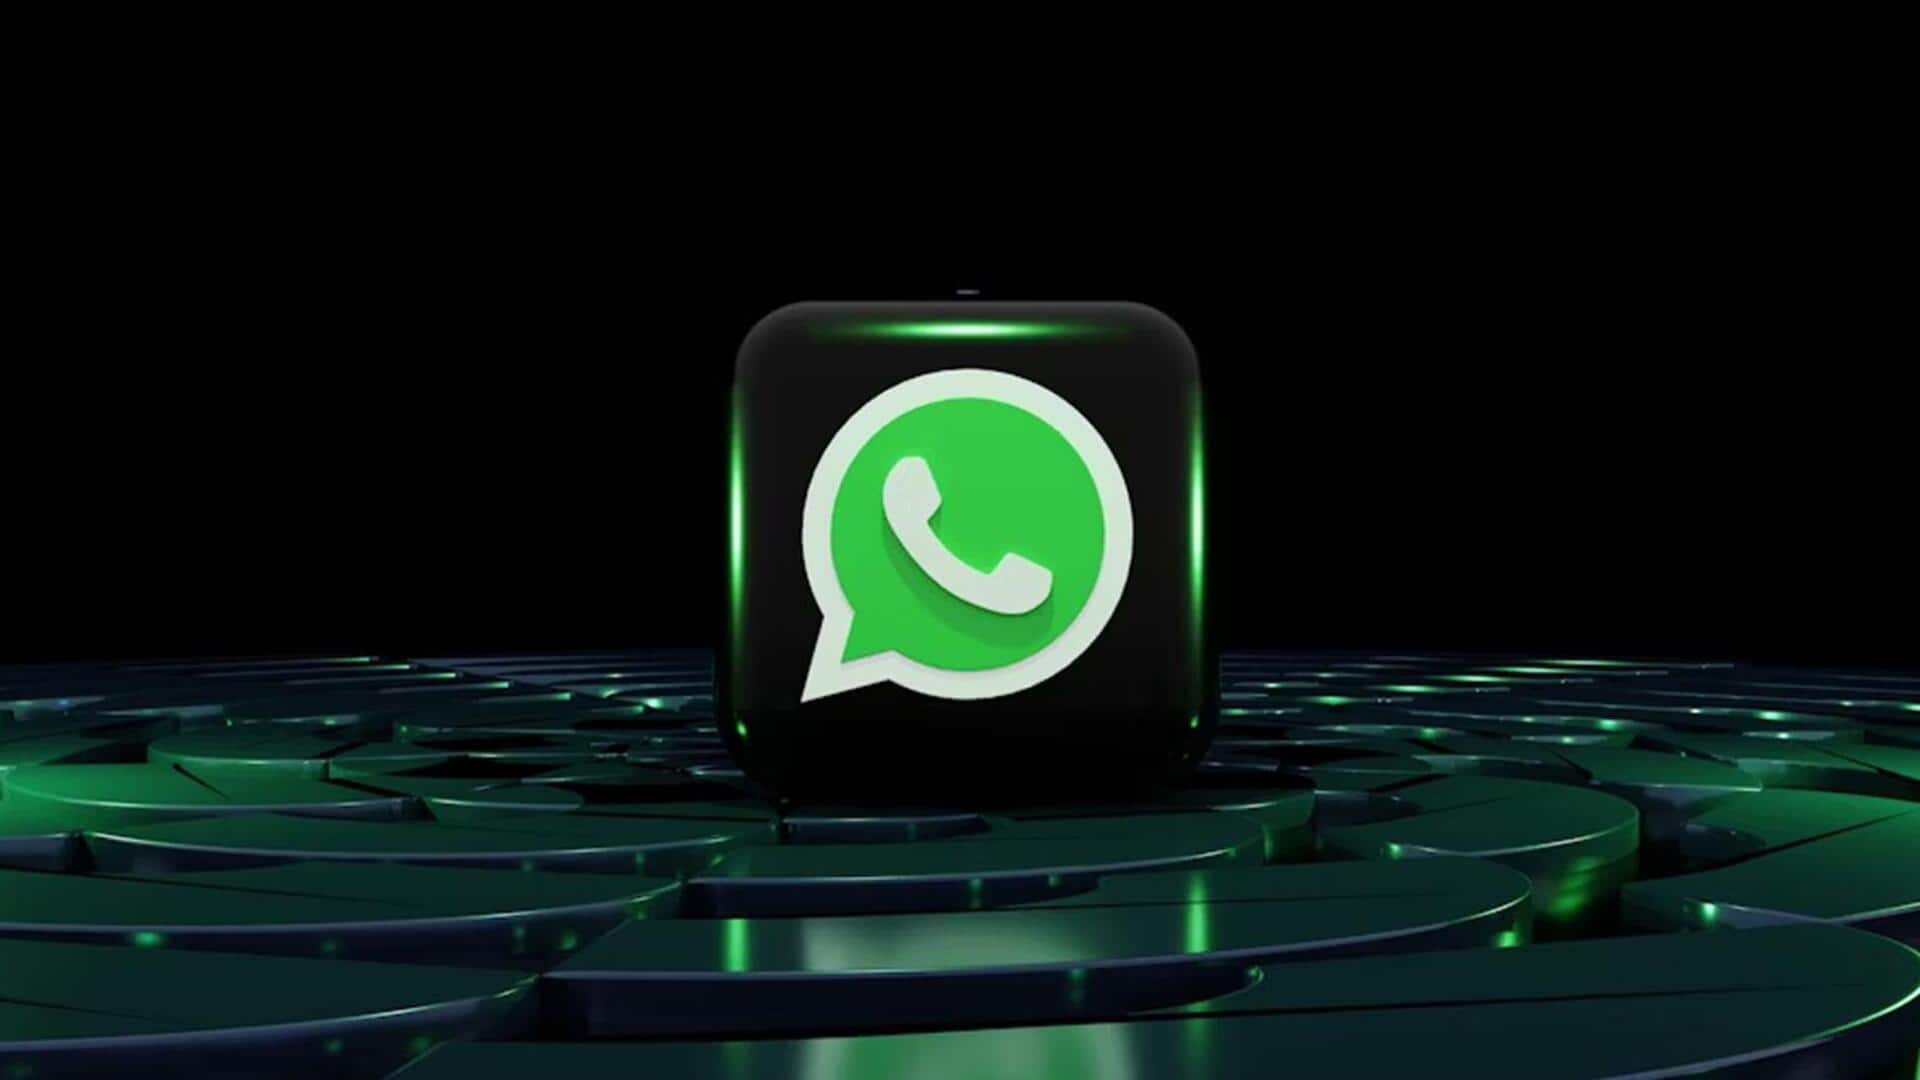 व्हाट्सऐप ने हाई कोर्ट में कहा- एंक्रिप्शन तोड़ने को कहा गया तो भारत छोड़ देंगे